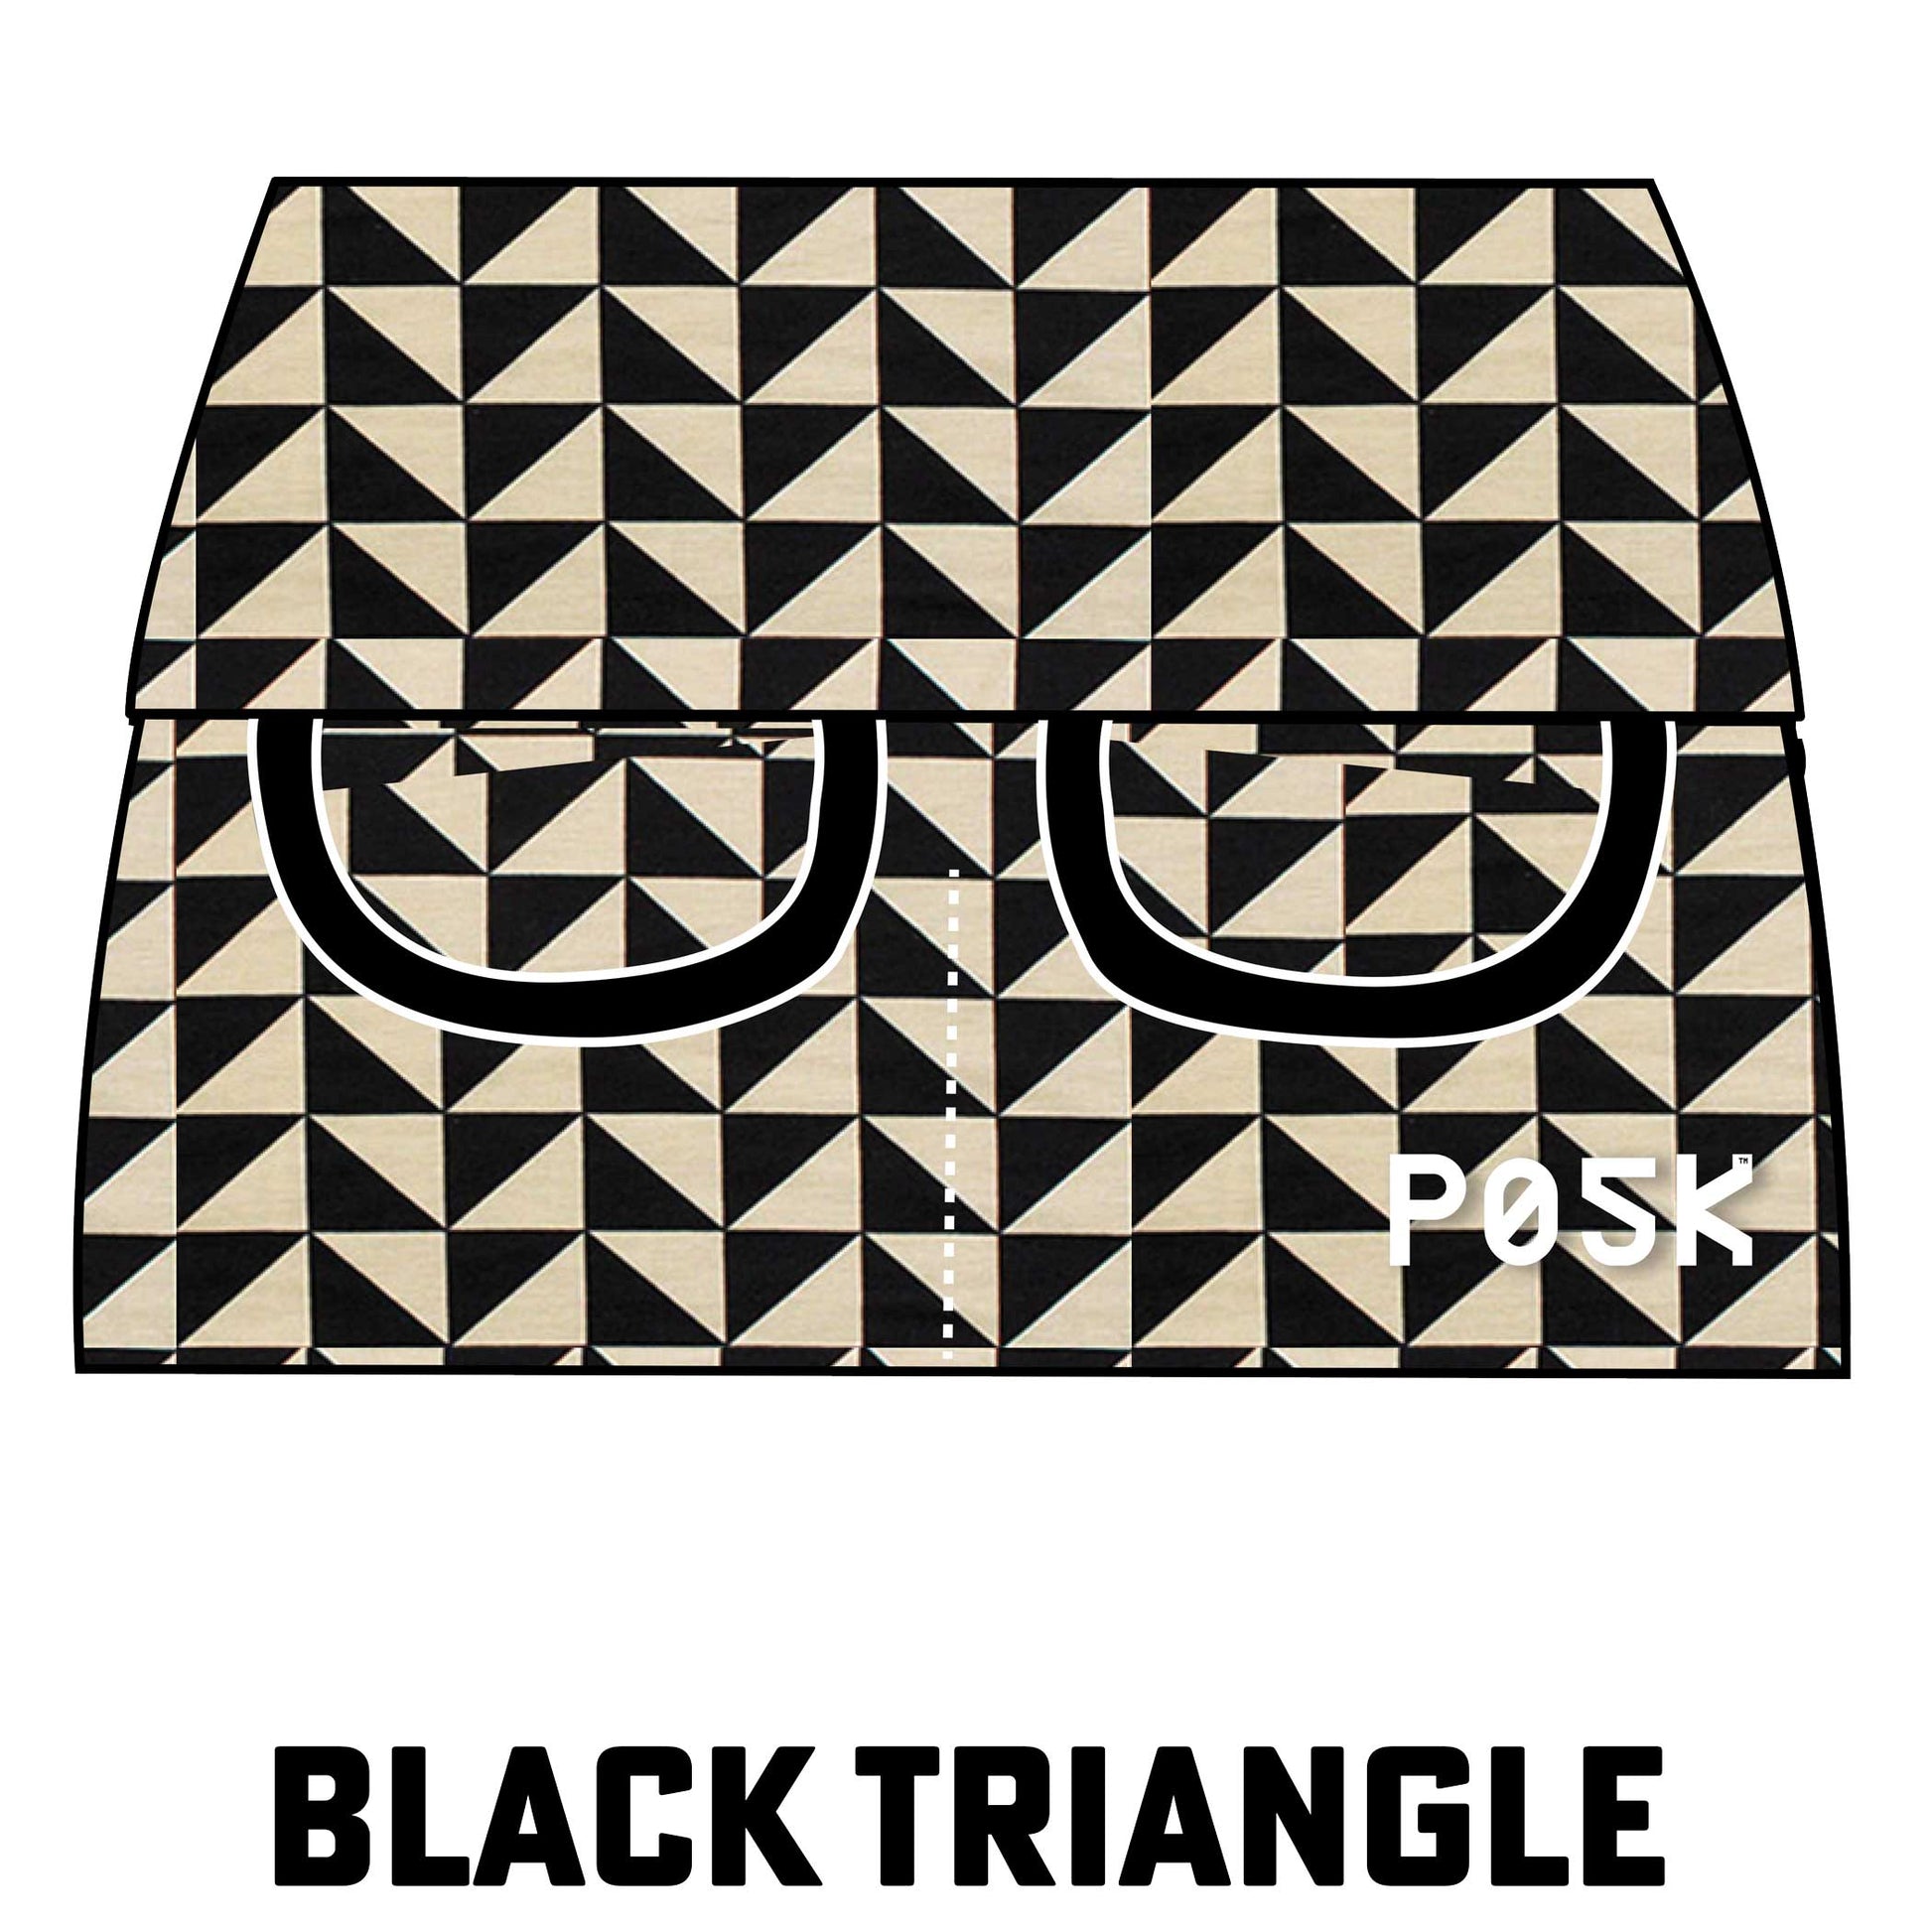 P05K™ | Black Triangles Waist Pockets-Waist Pockets-XS-Black Triangle-Same As Waistband-Hagsters